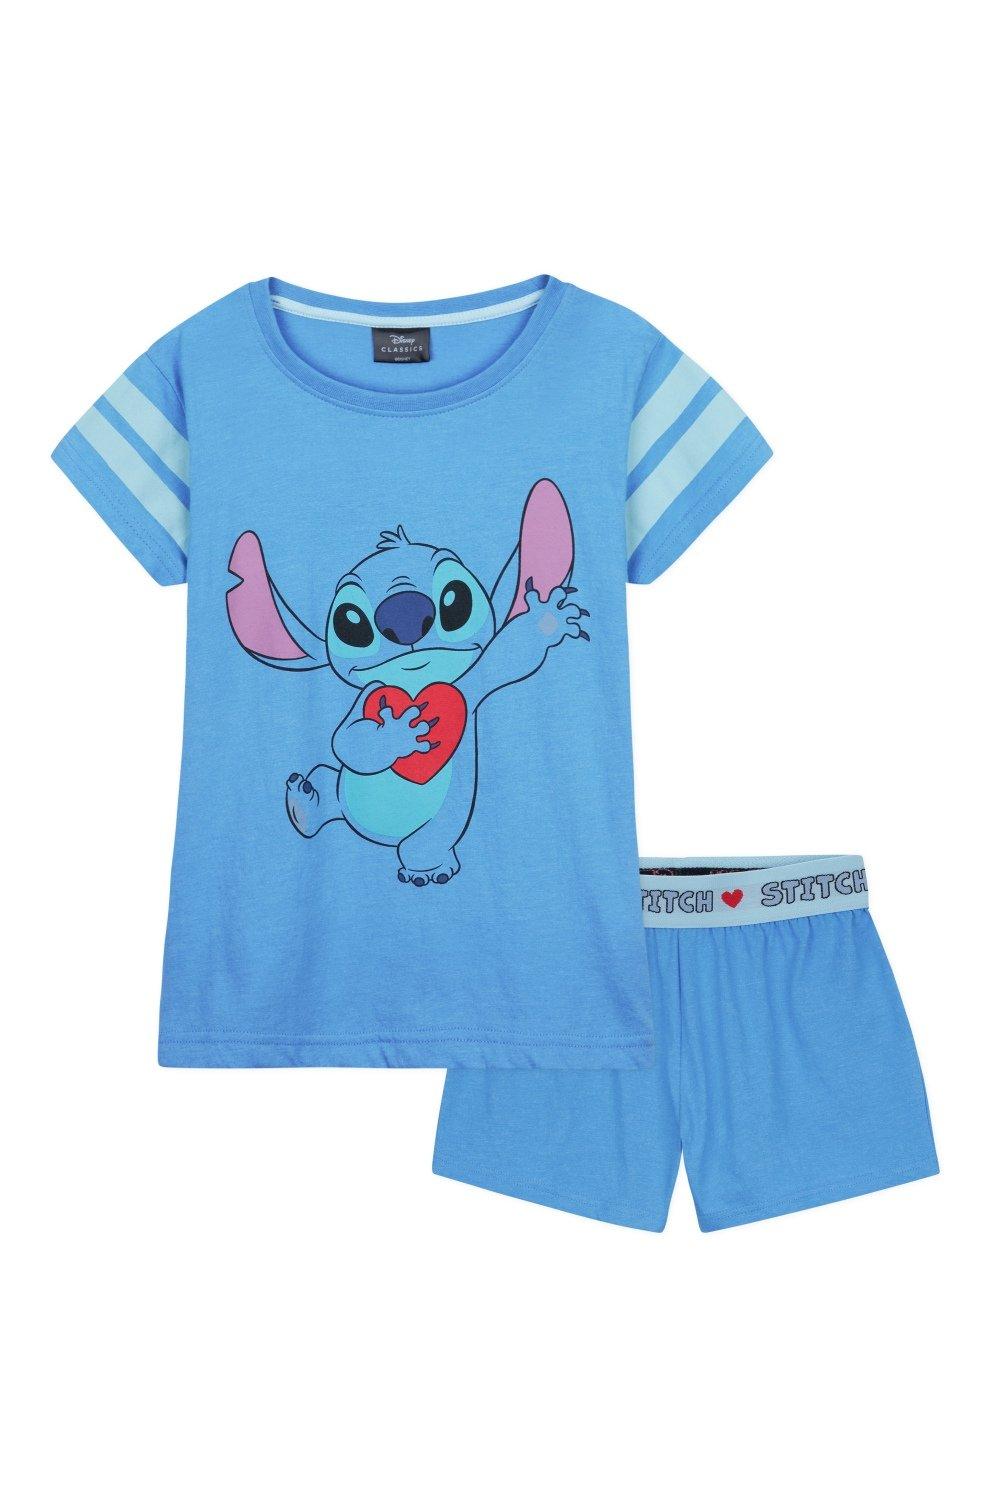 Stitch Shortie Pyjama Set